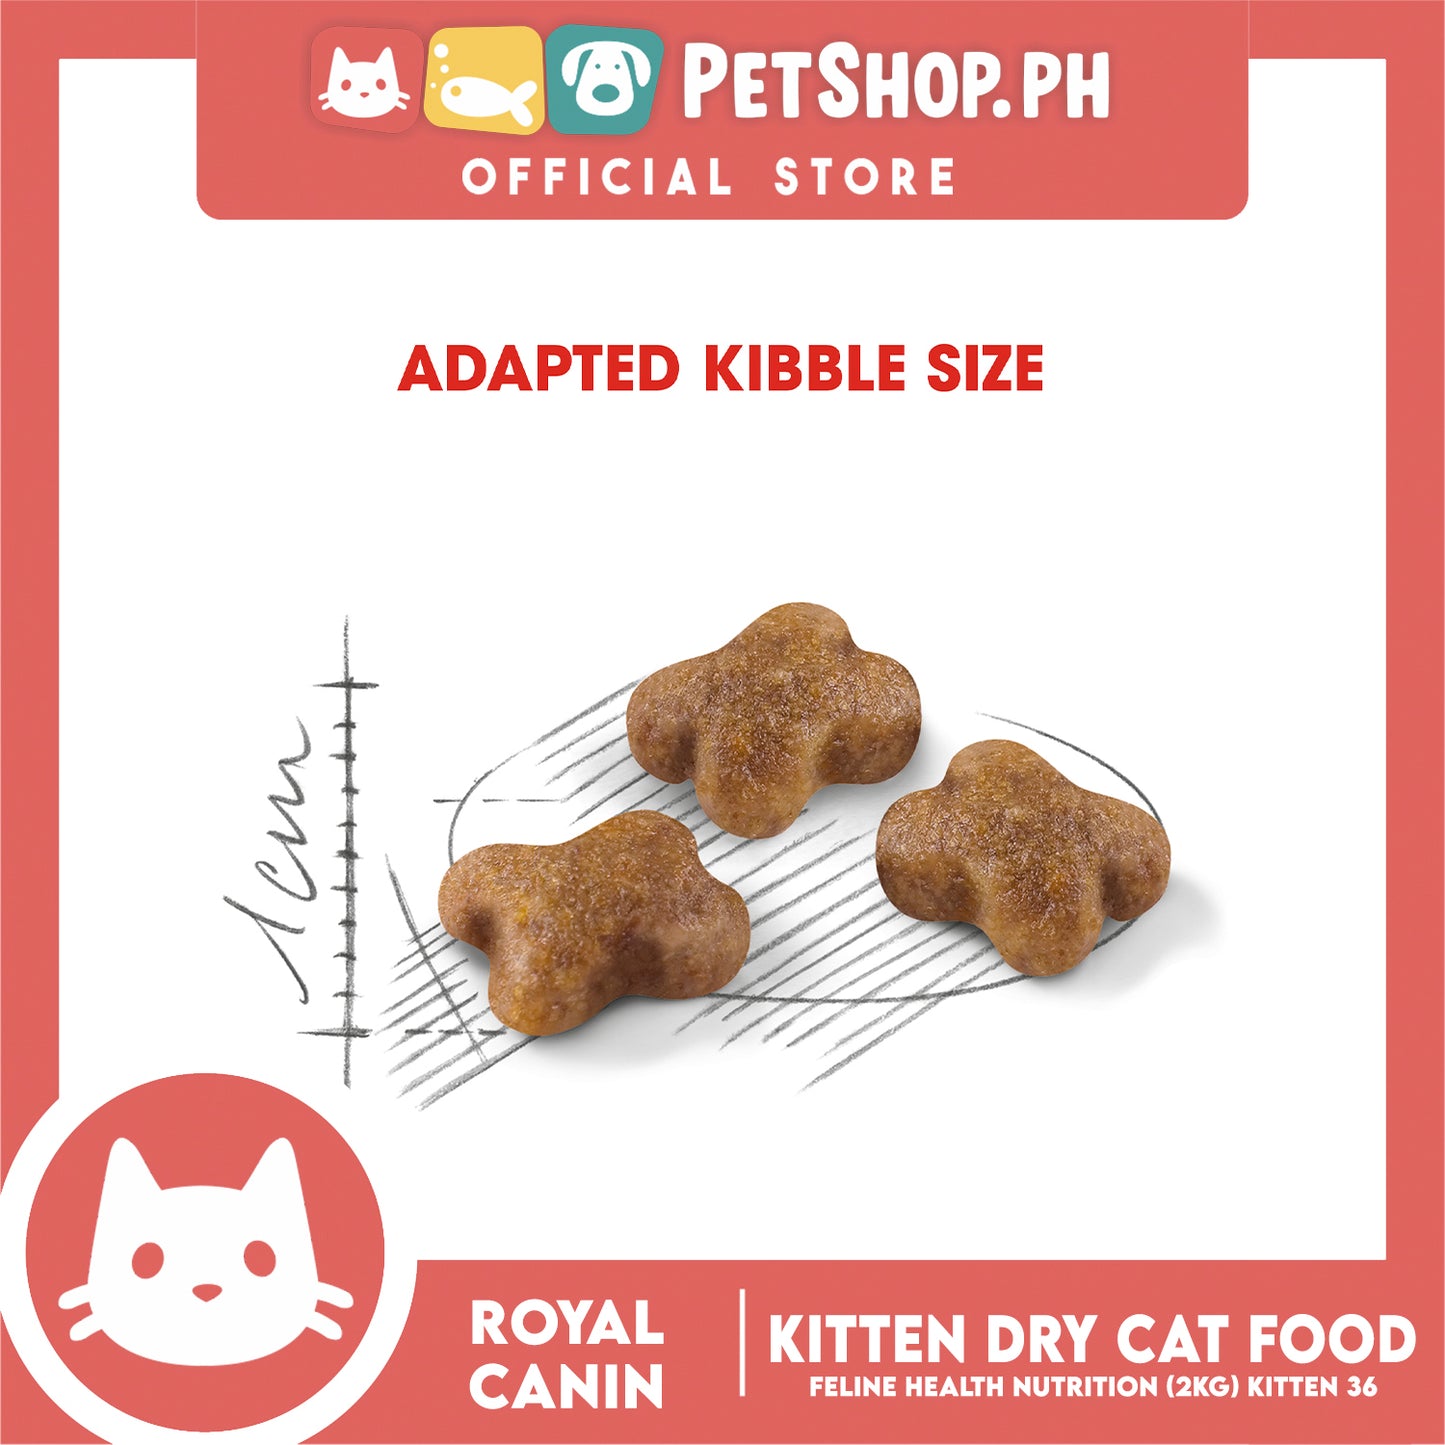 Royal Canin Feline Health Nutrition Kitten Dry Cat Food 2kg